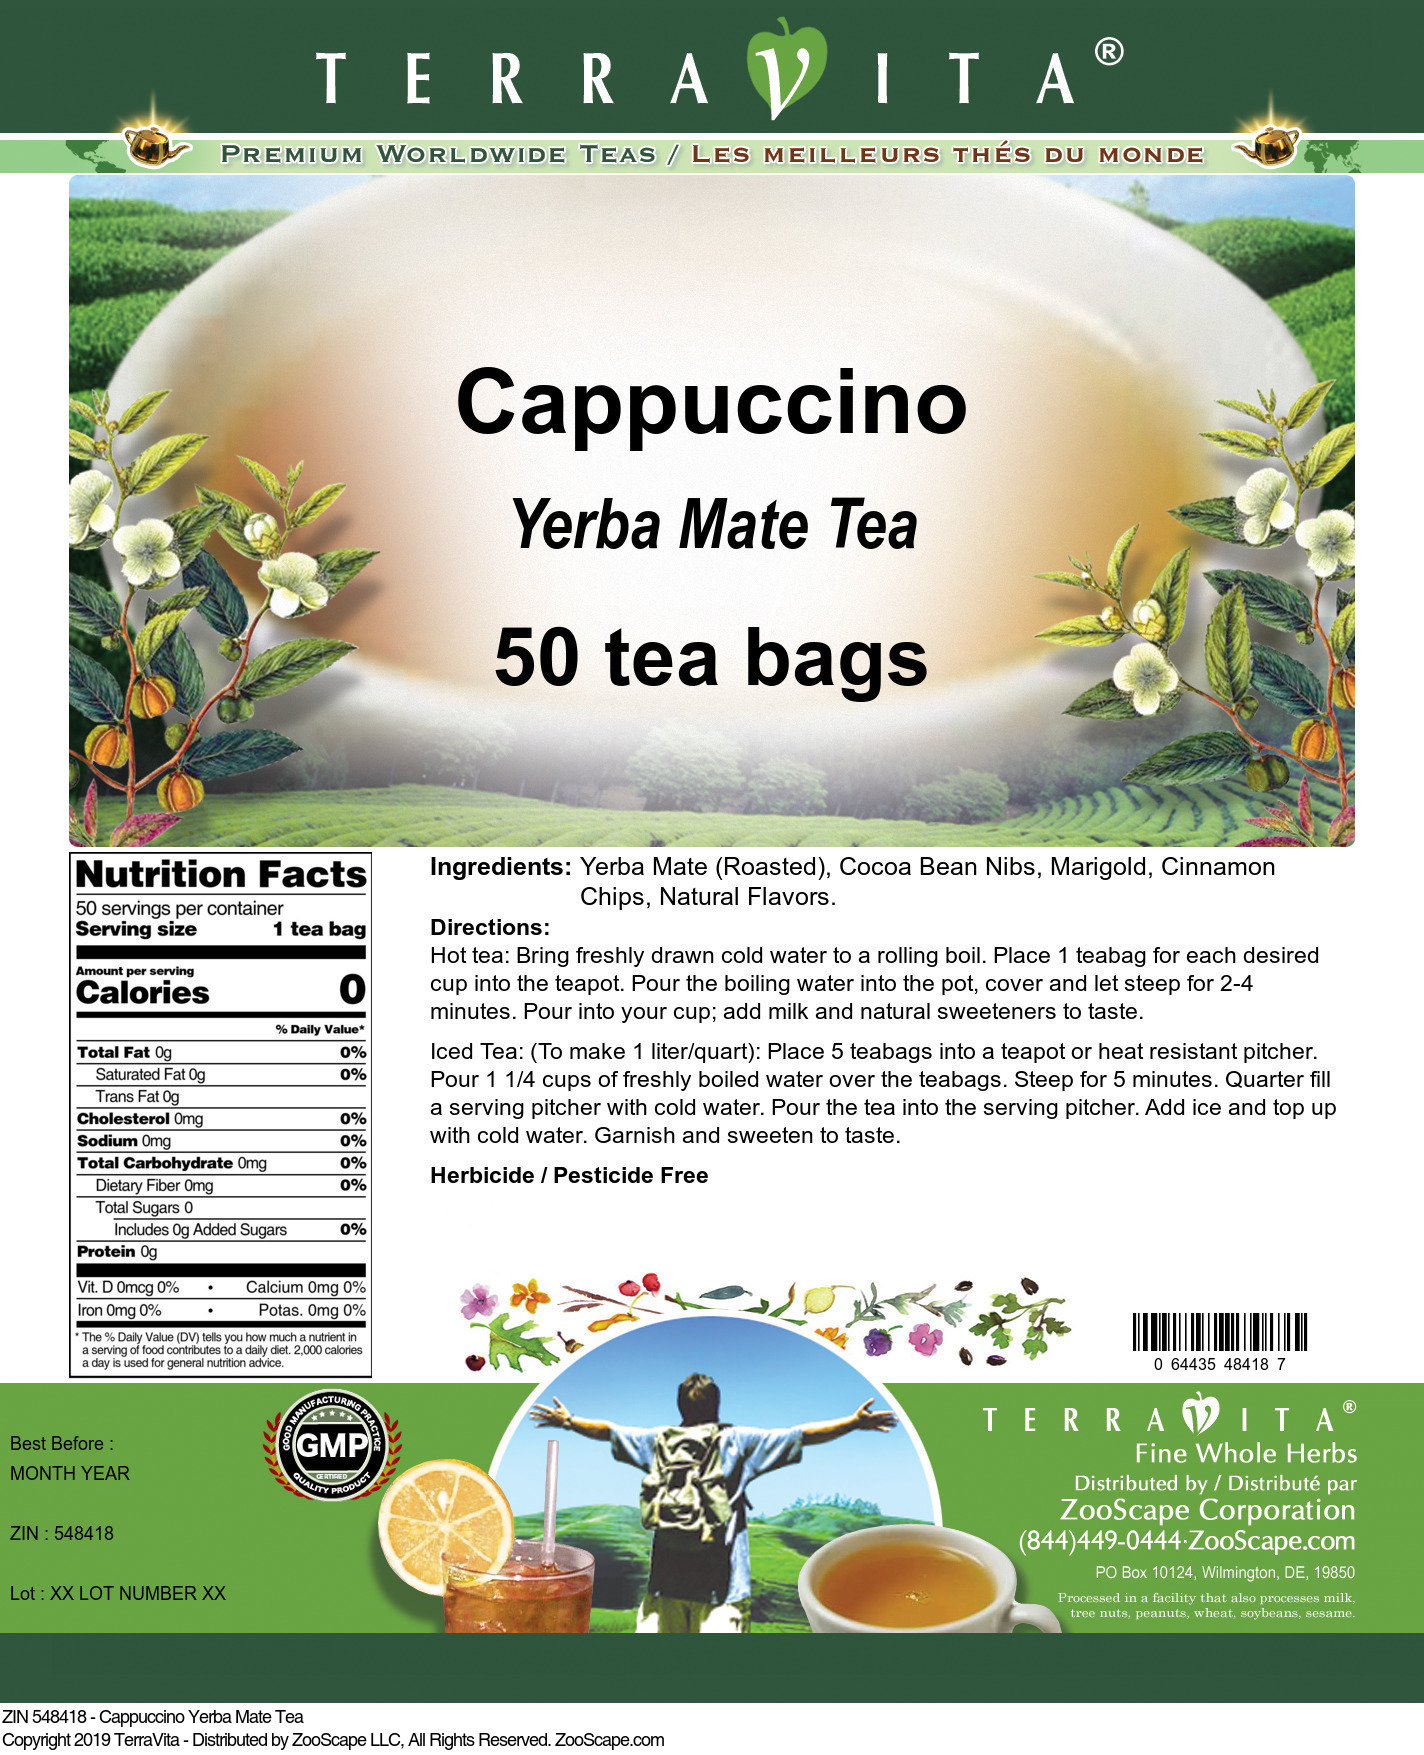 Cappuccino Yerba Mate Tea - Label